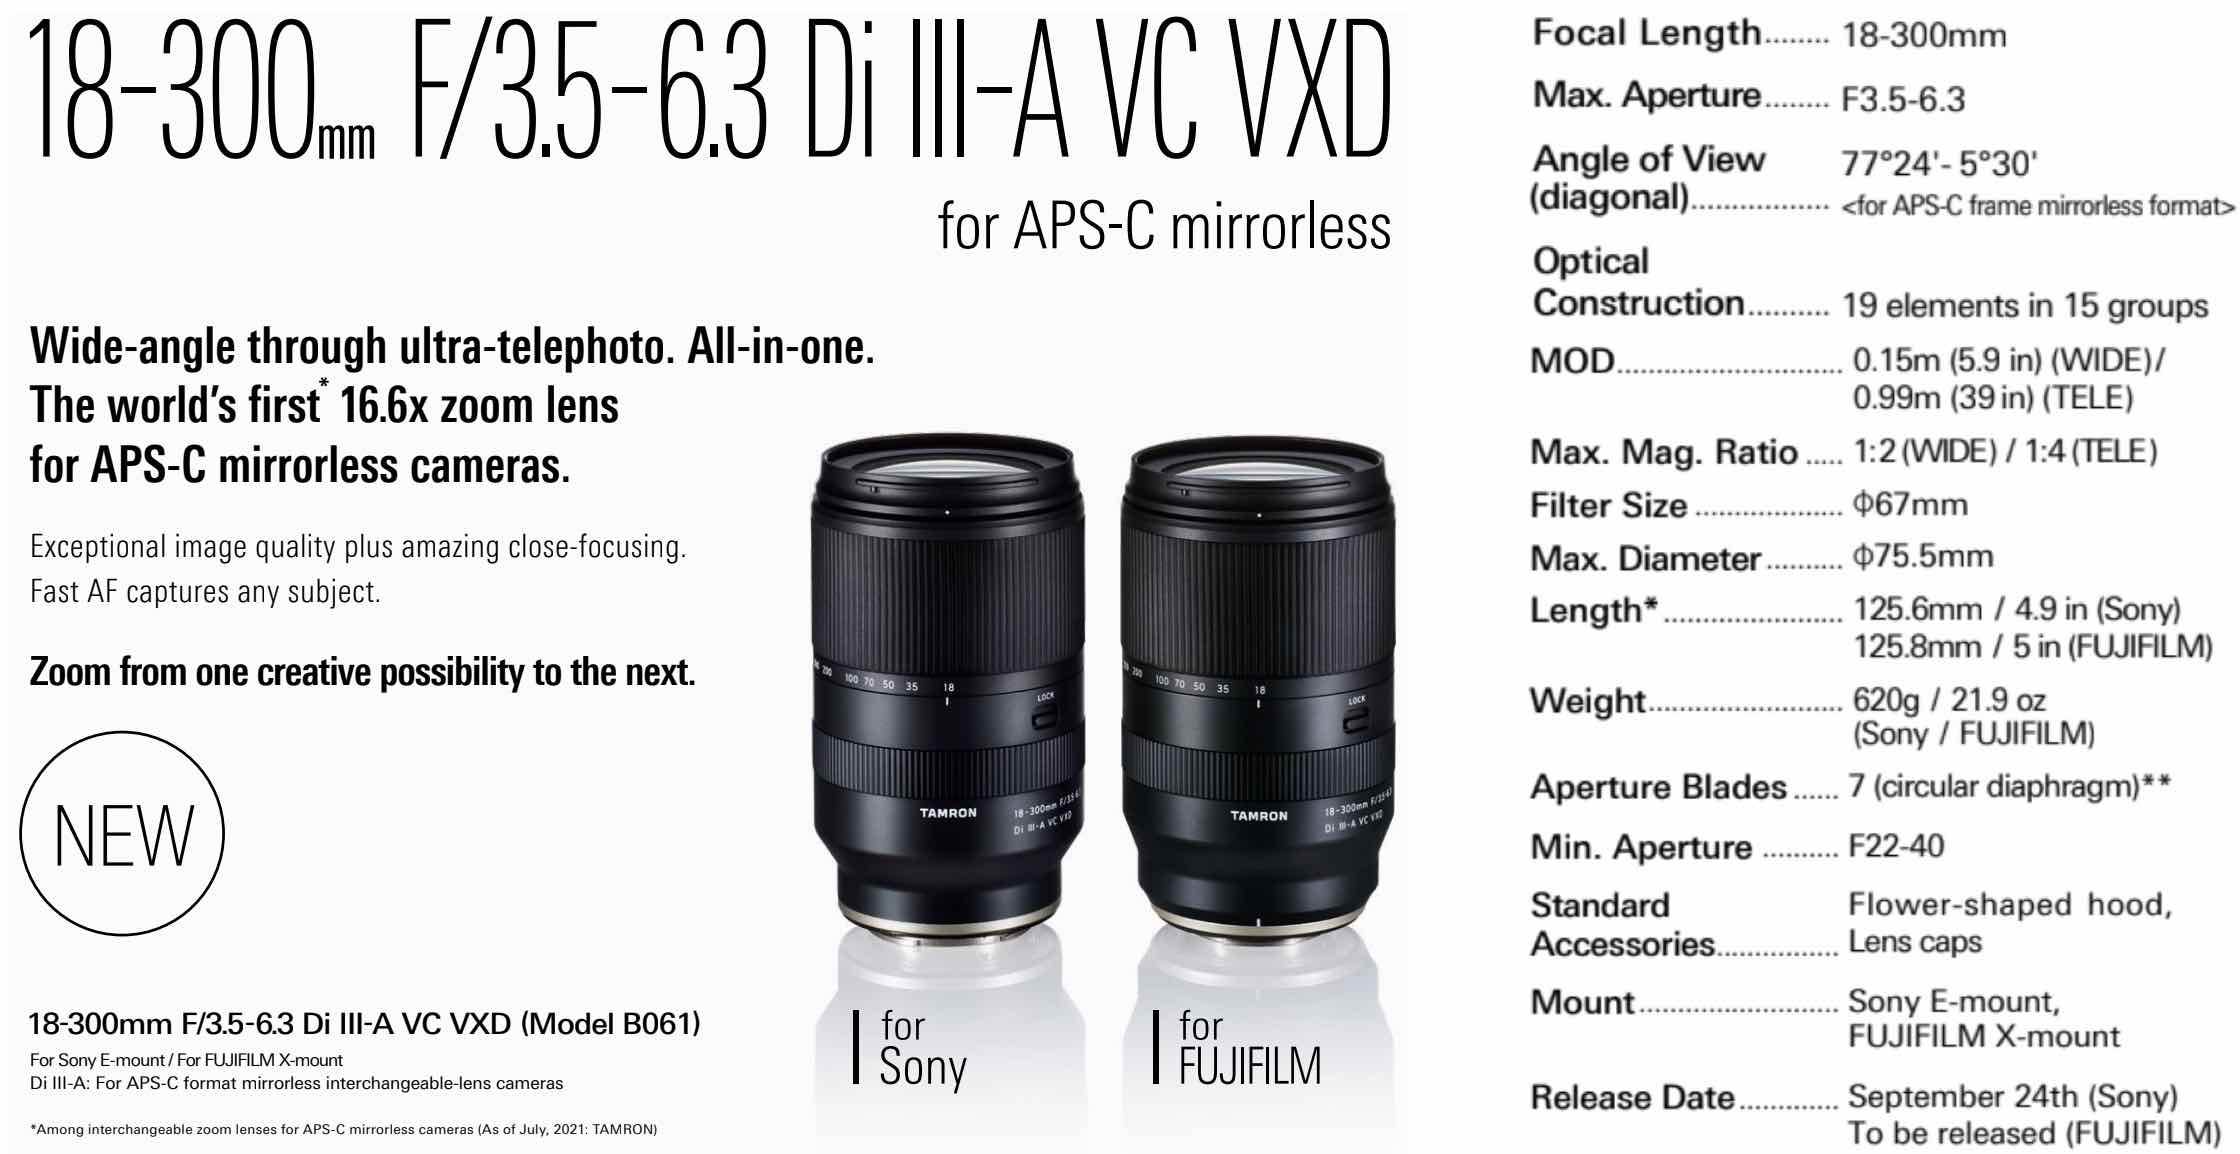 Tamron ra mắt ống kính 18-300mm F3.5-6.3 dành cho máy ảnh APS-C ngàm E của Sony